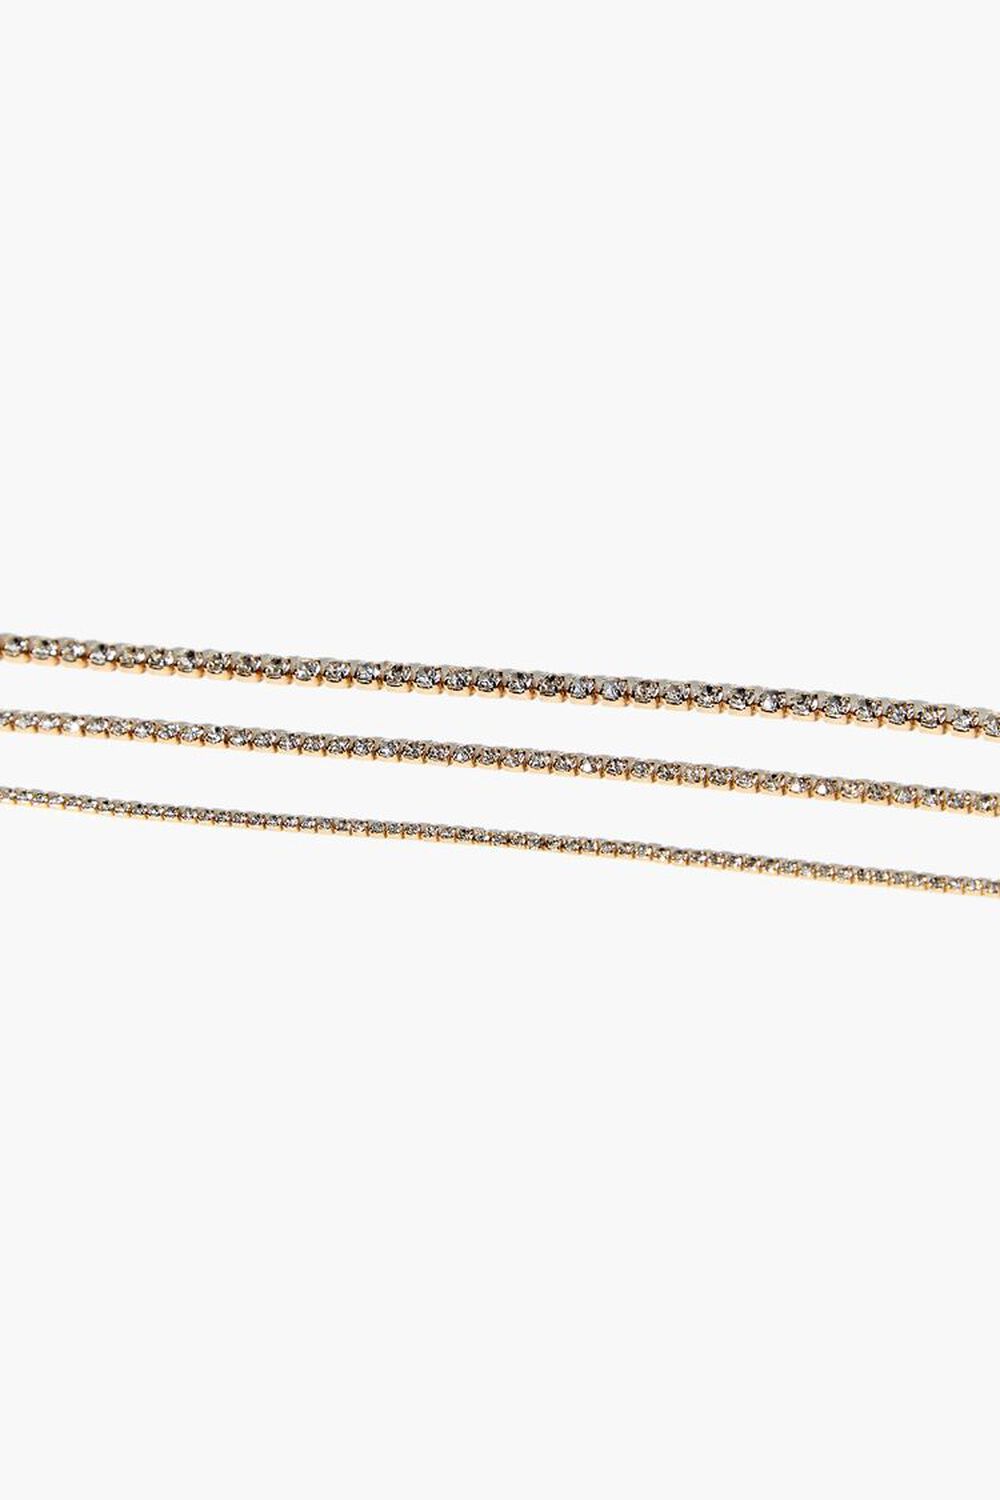 GOLD Rhinestone Chain Bracelet Set, image 1